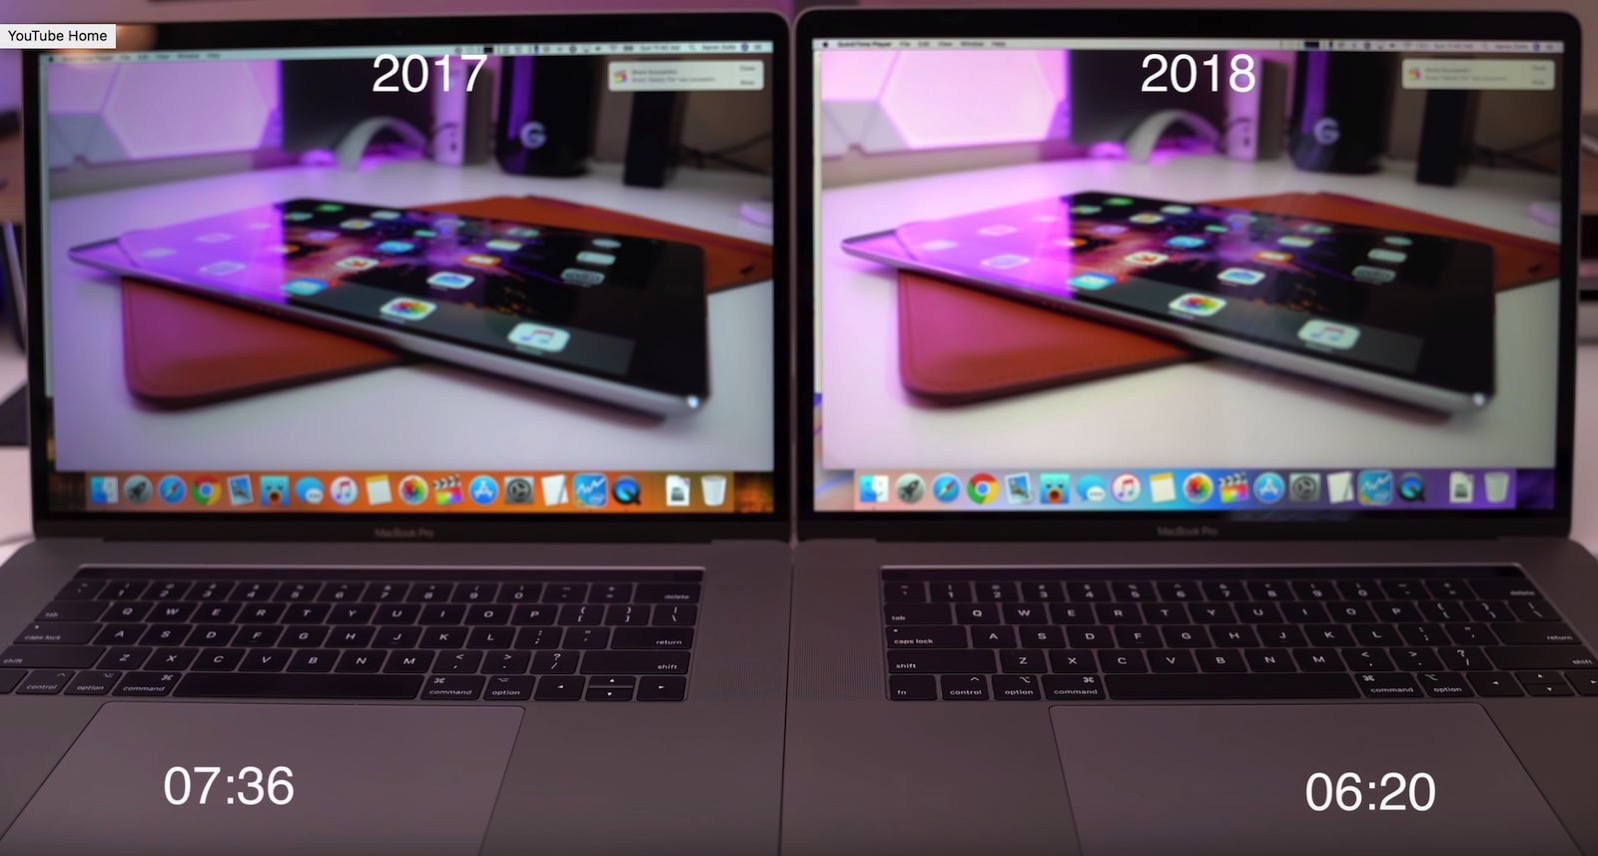 MacBook-Pro-2018-2017-final-cut-comparison-5.jpg